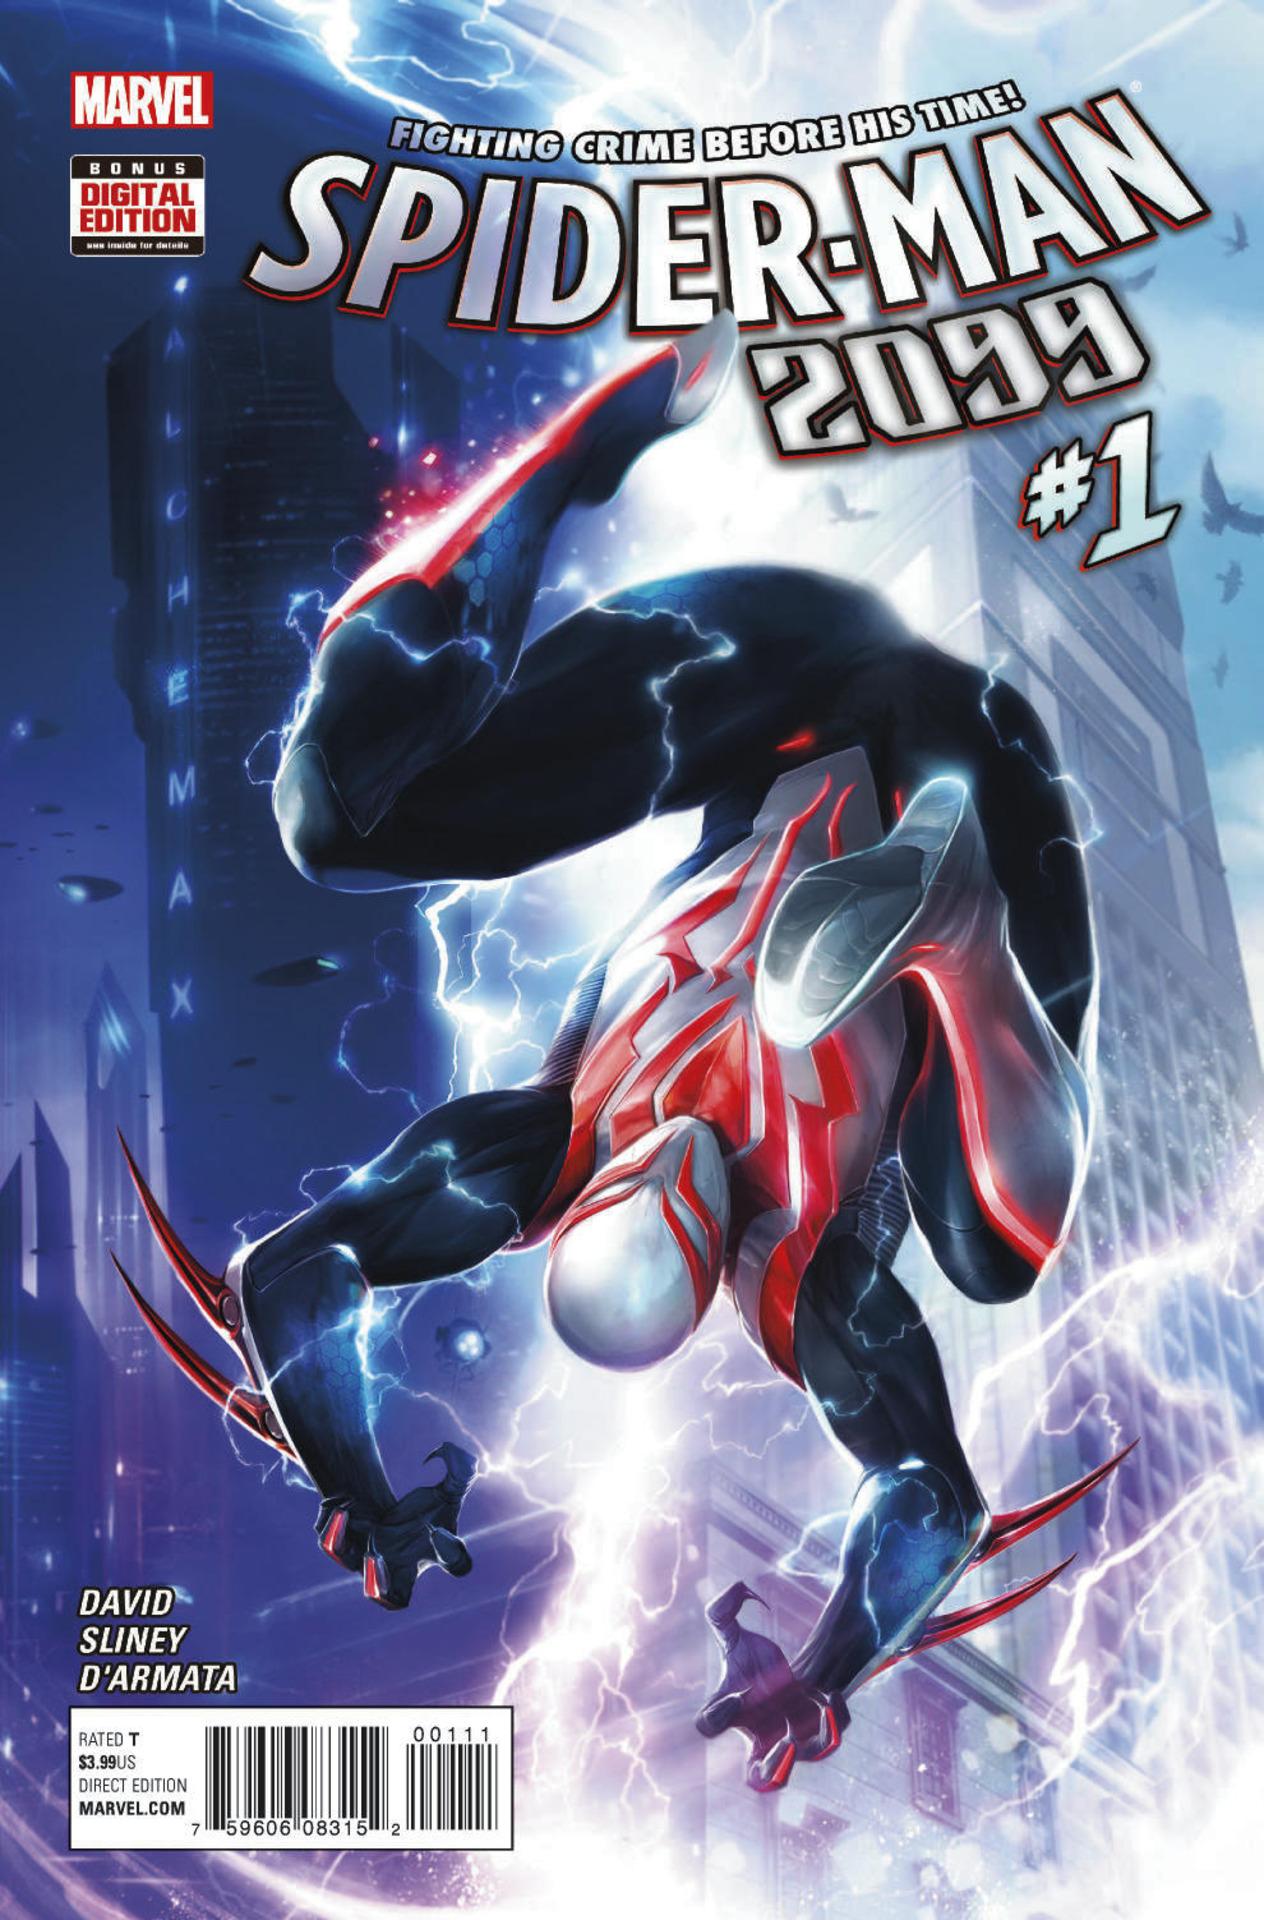 Spider-Man 2099 Vol. 3 #1